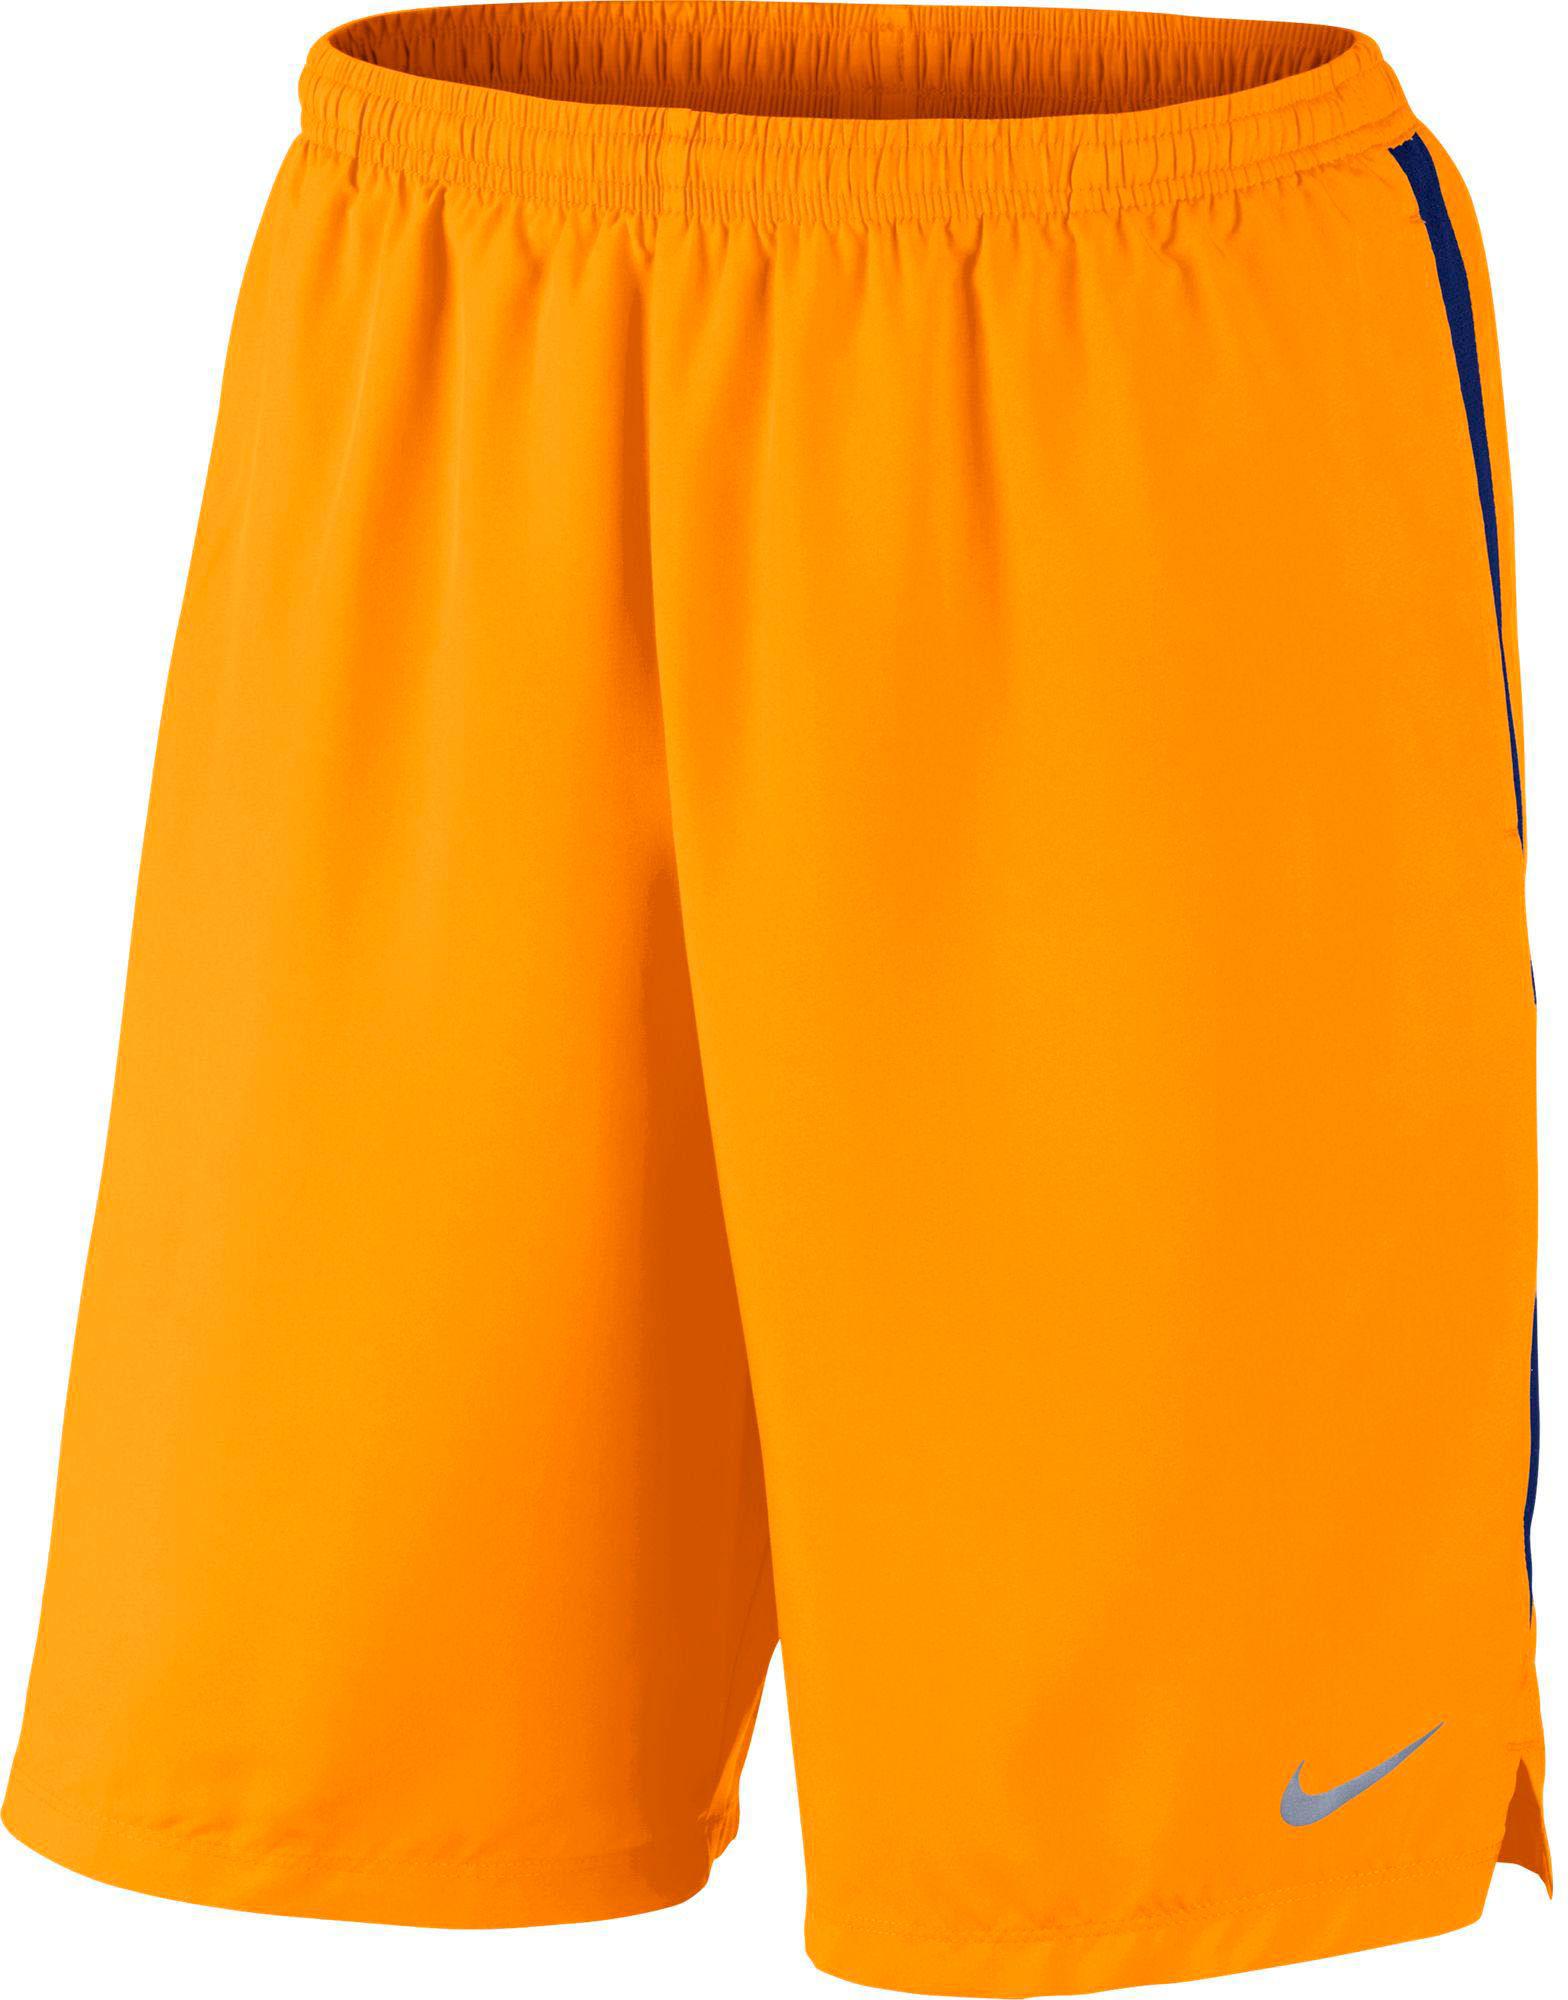 orange men nike shorts